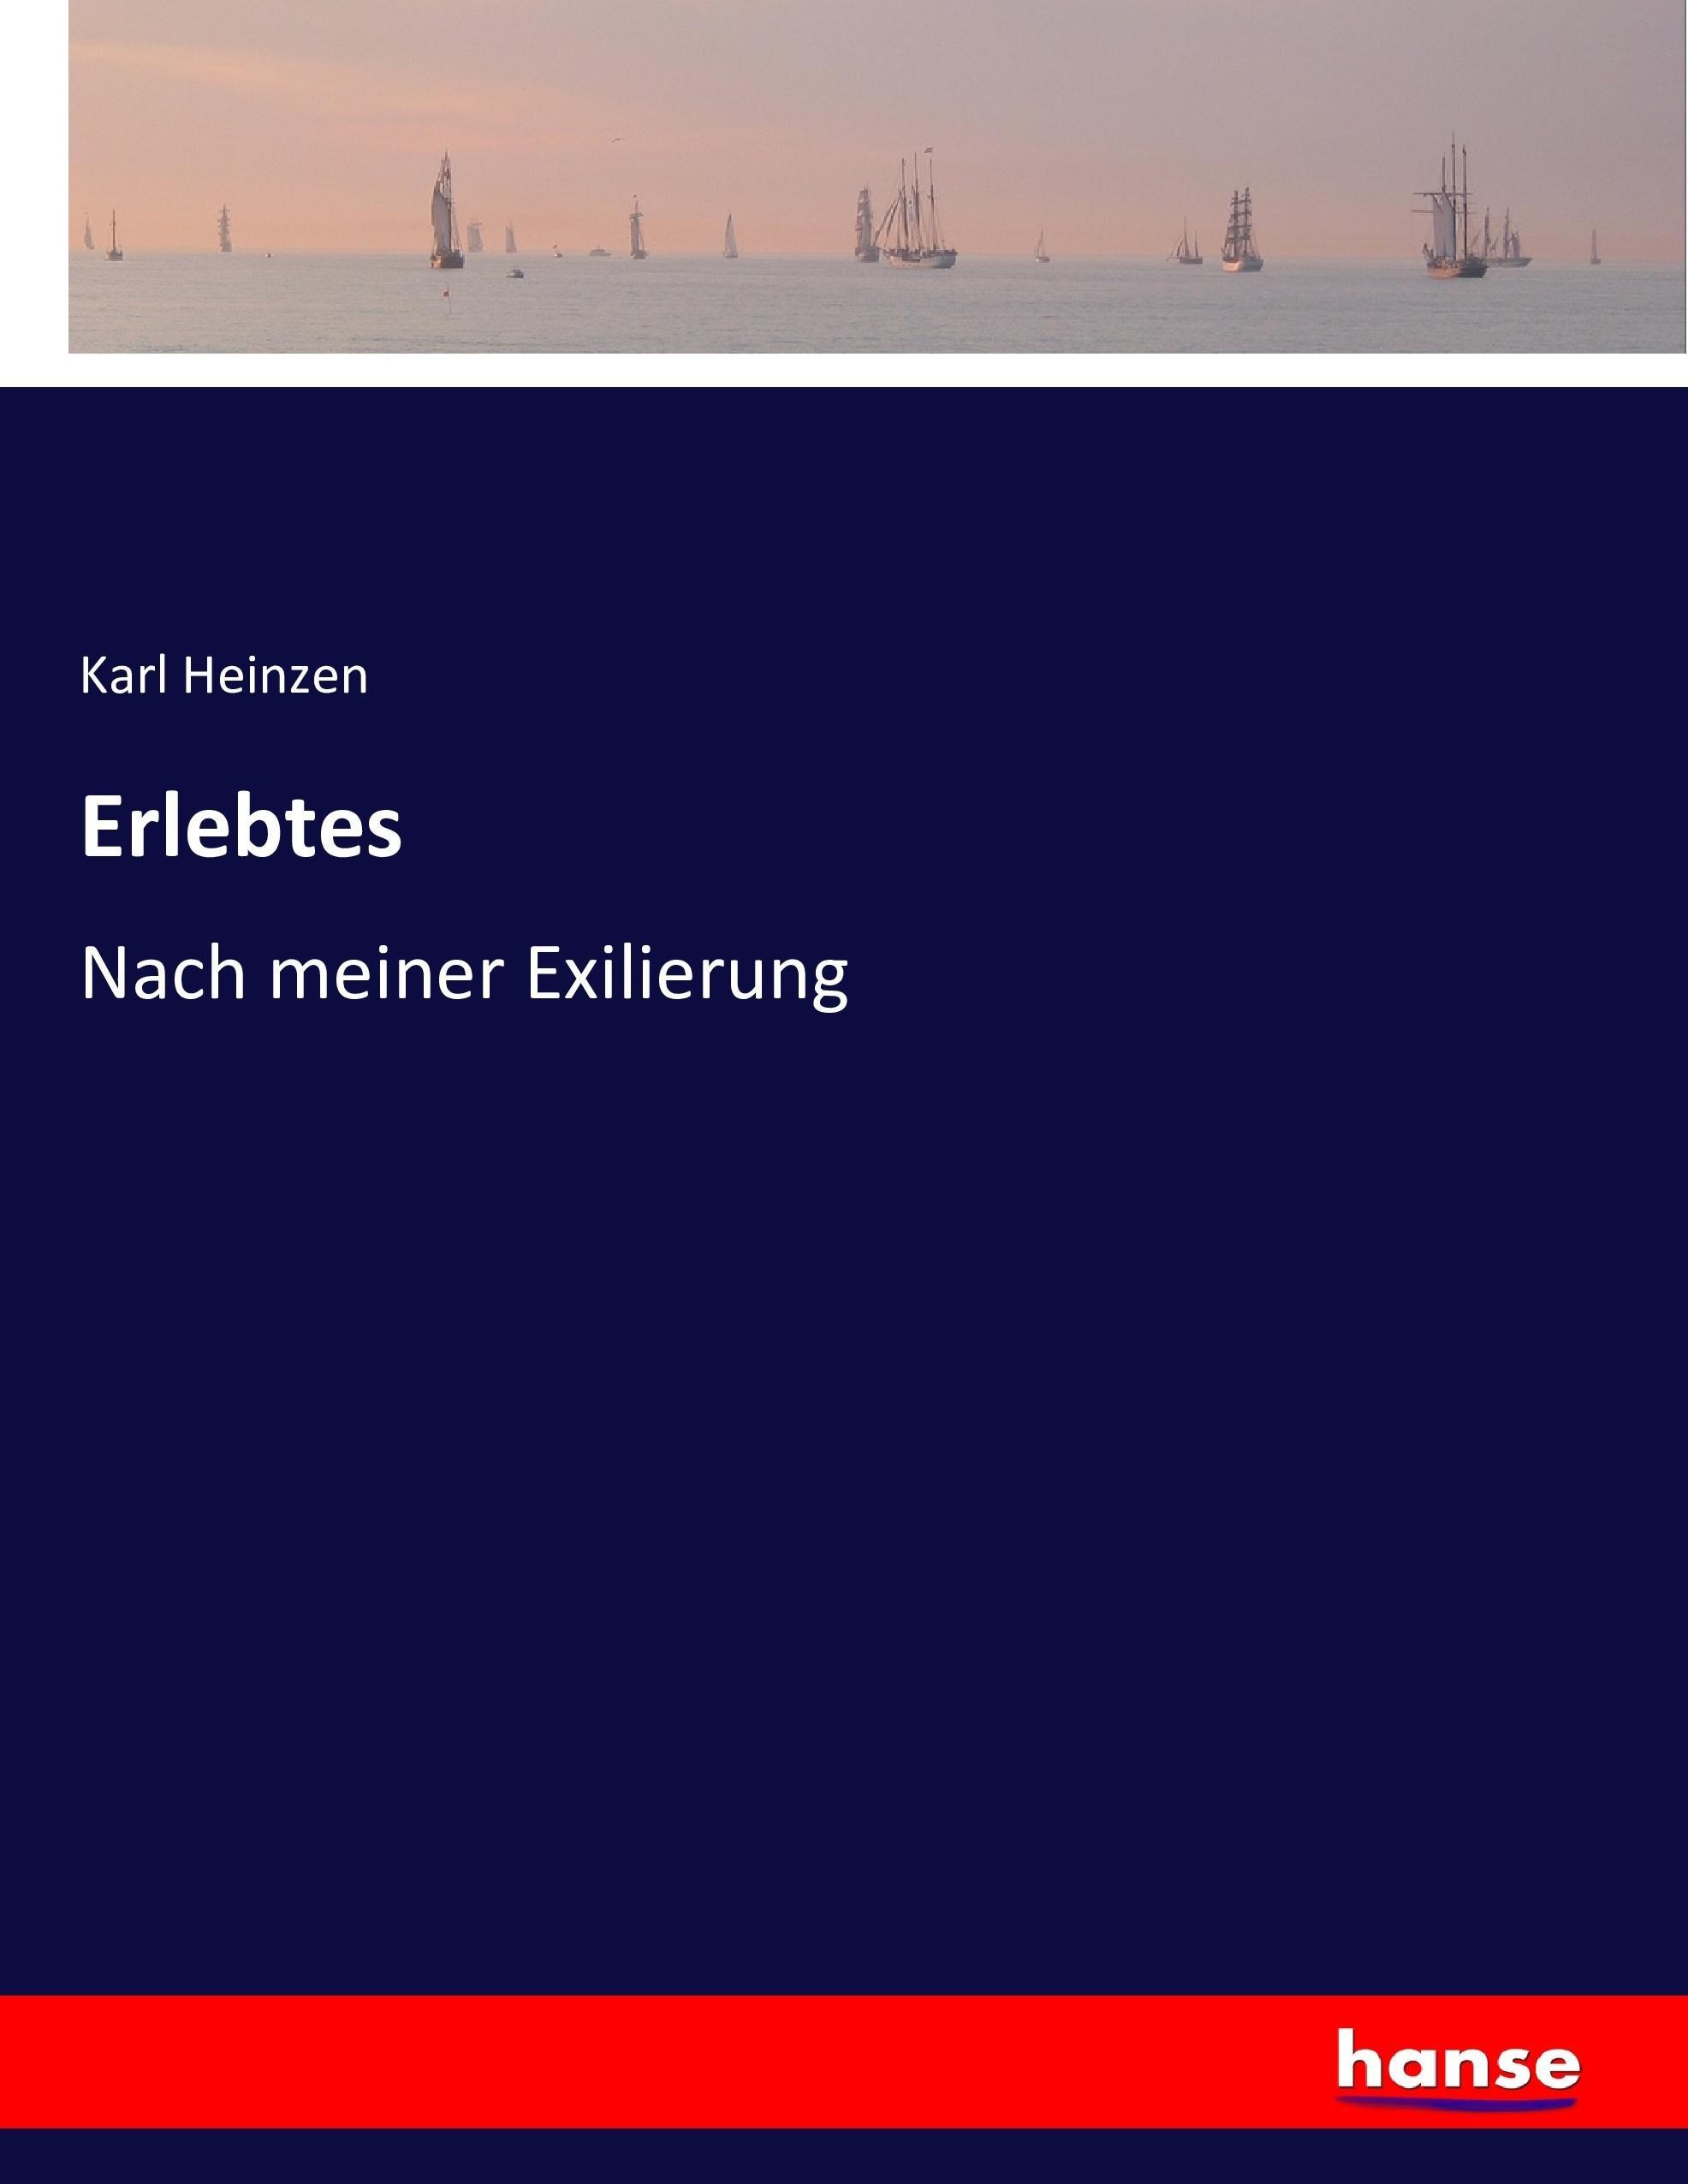 Erlebtes / Nach meiner Exilierung / Karl Heinzen / Taschenbuch / Paperback / 508 S. / Deutsch / 2016 / hansebooks / EAN 9783743363076 - Heinzen, Karl